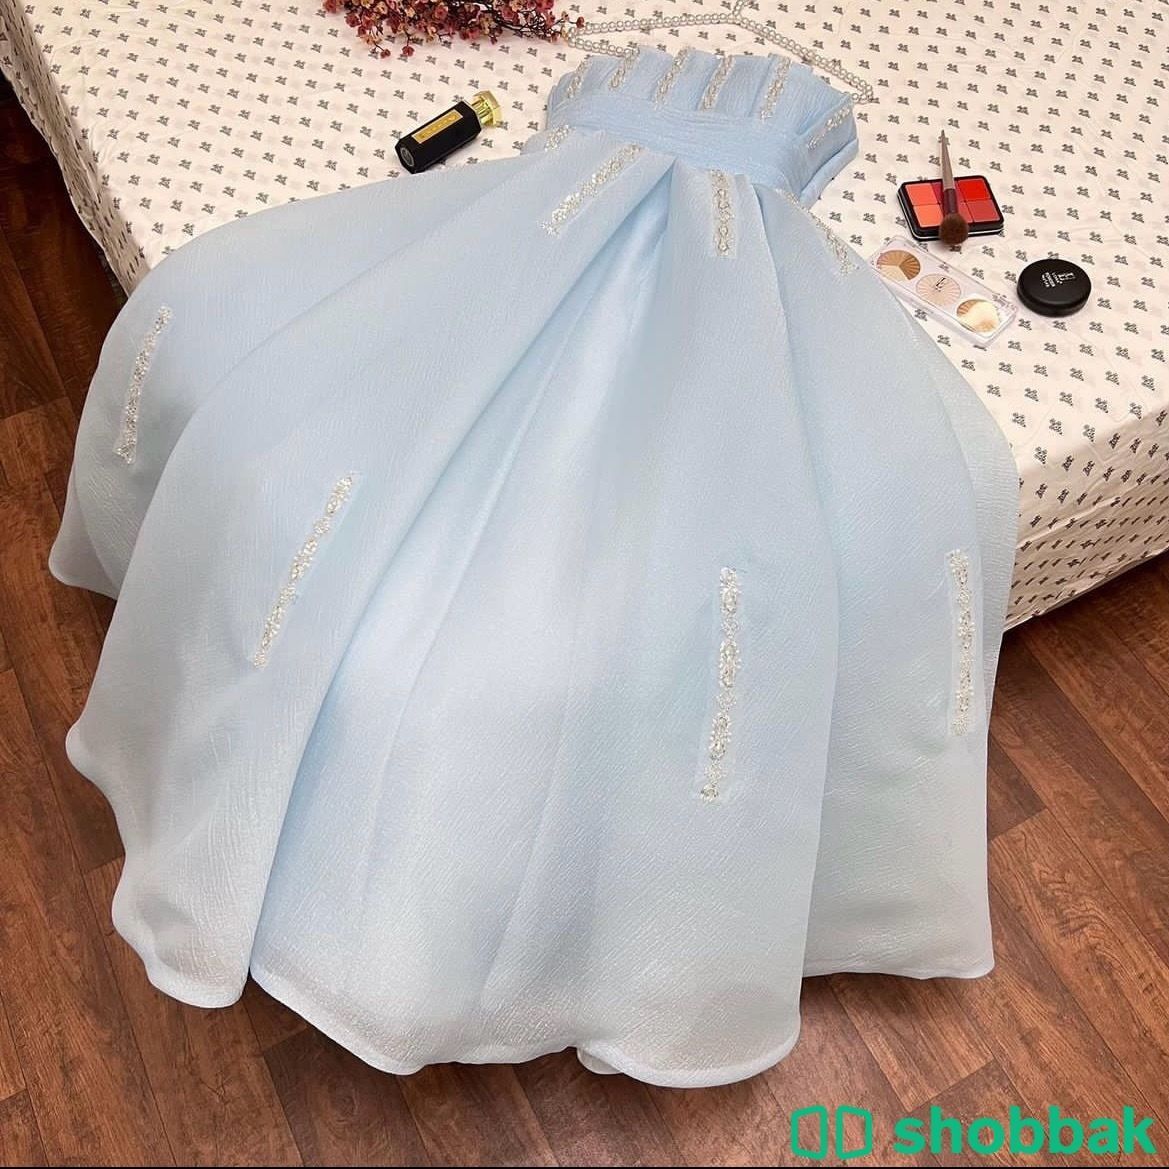 فستان جديد للبيع  Shobbak Saudi Arabia